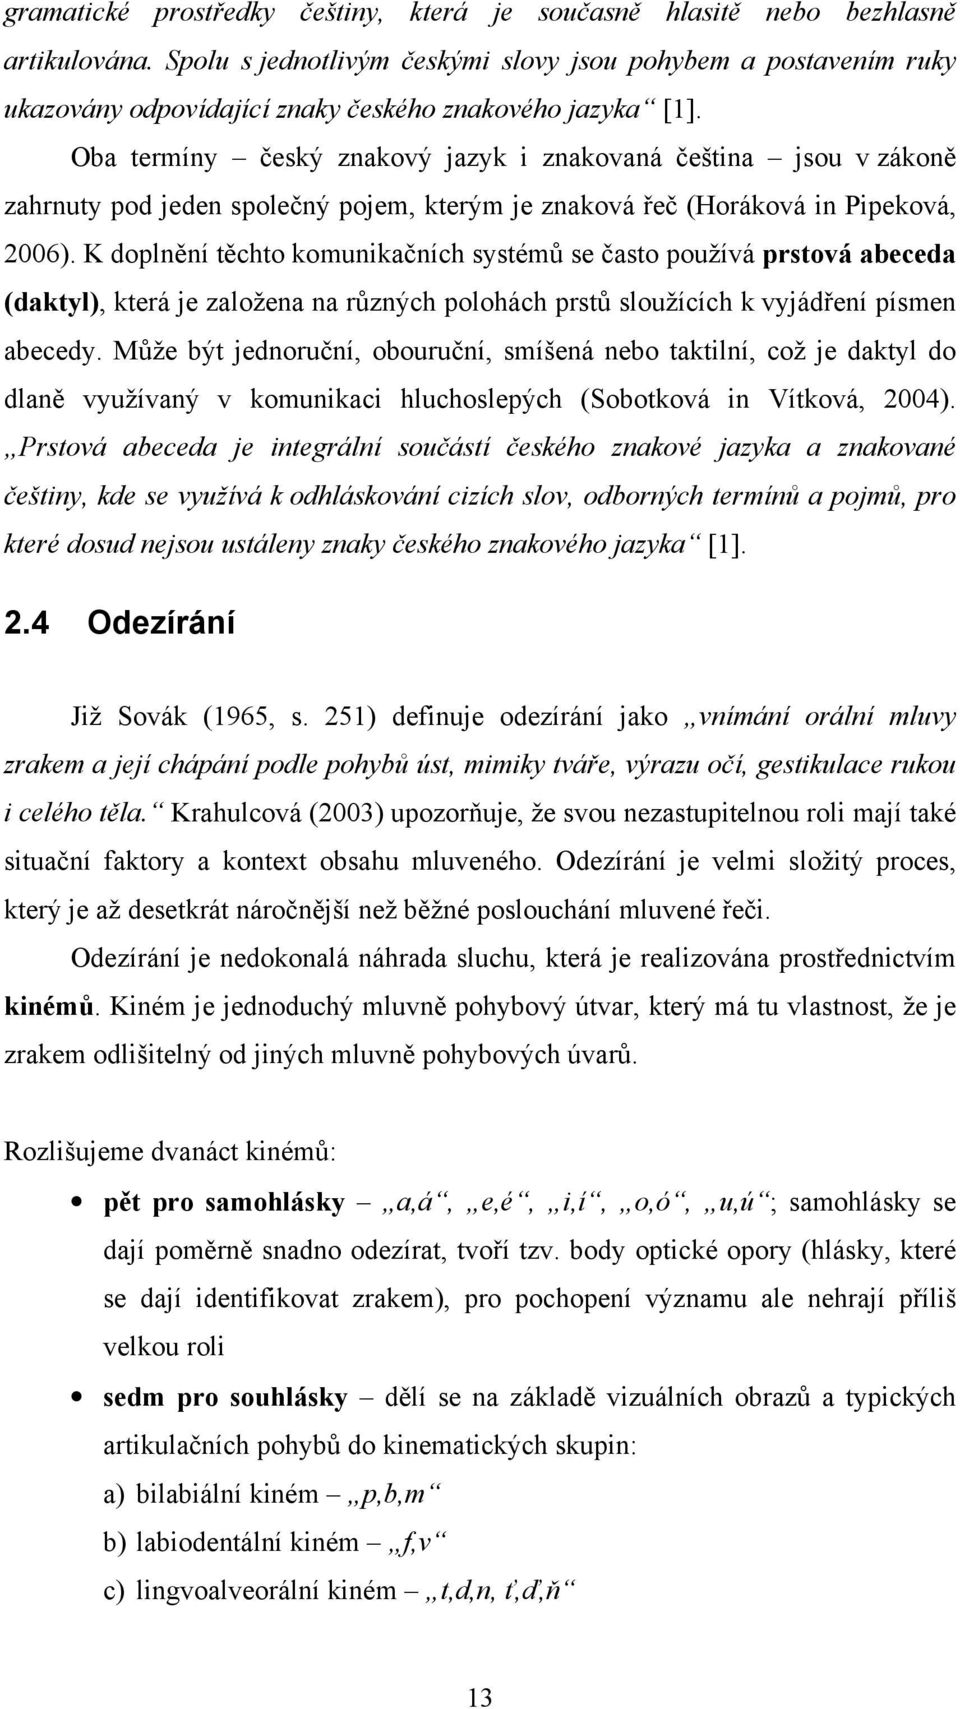 Oba termíny český znakový jazyk i znakovaná čeština jsou v zákoně zahrnuty pod jeden společný pojem, kterým je znaková řeč (Horáková in Pipeková, 2006).